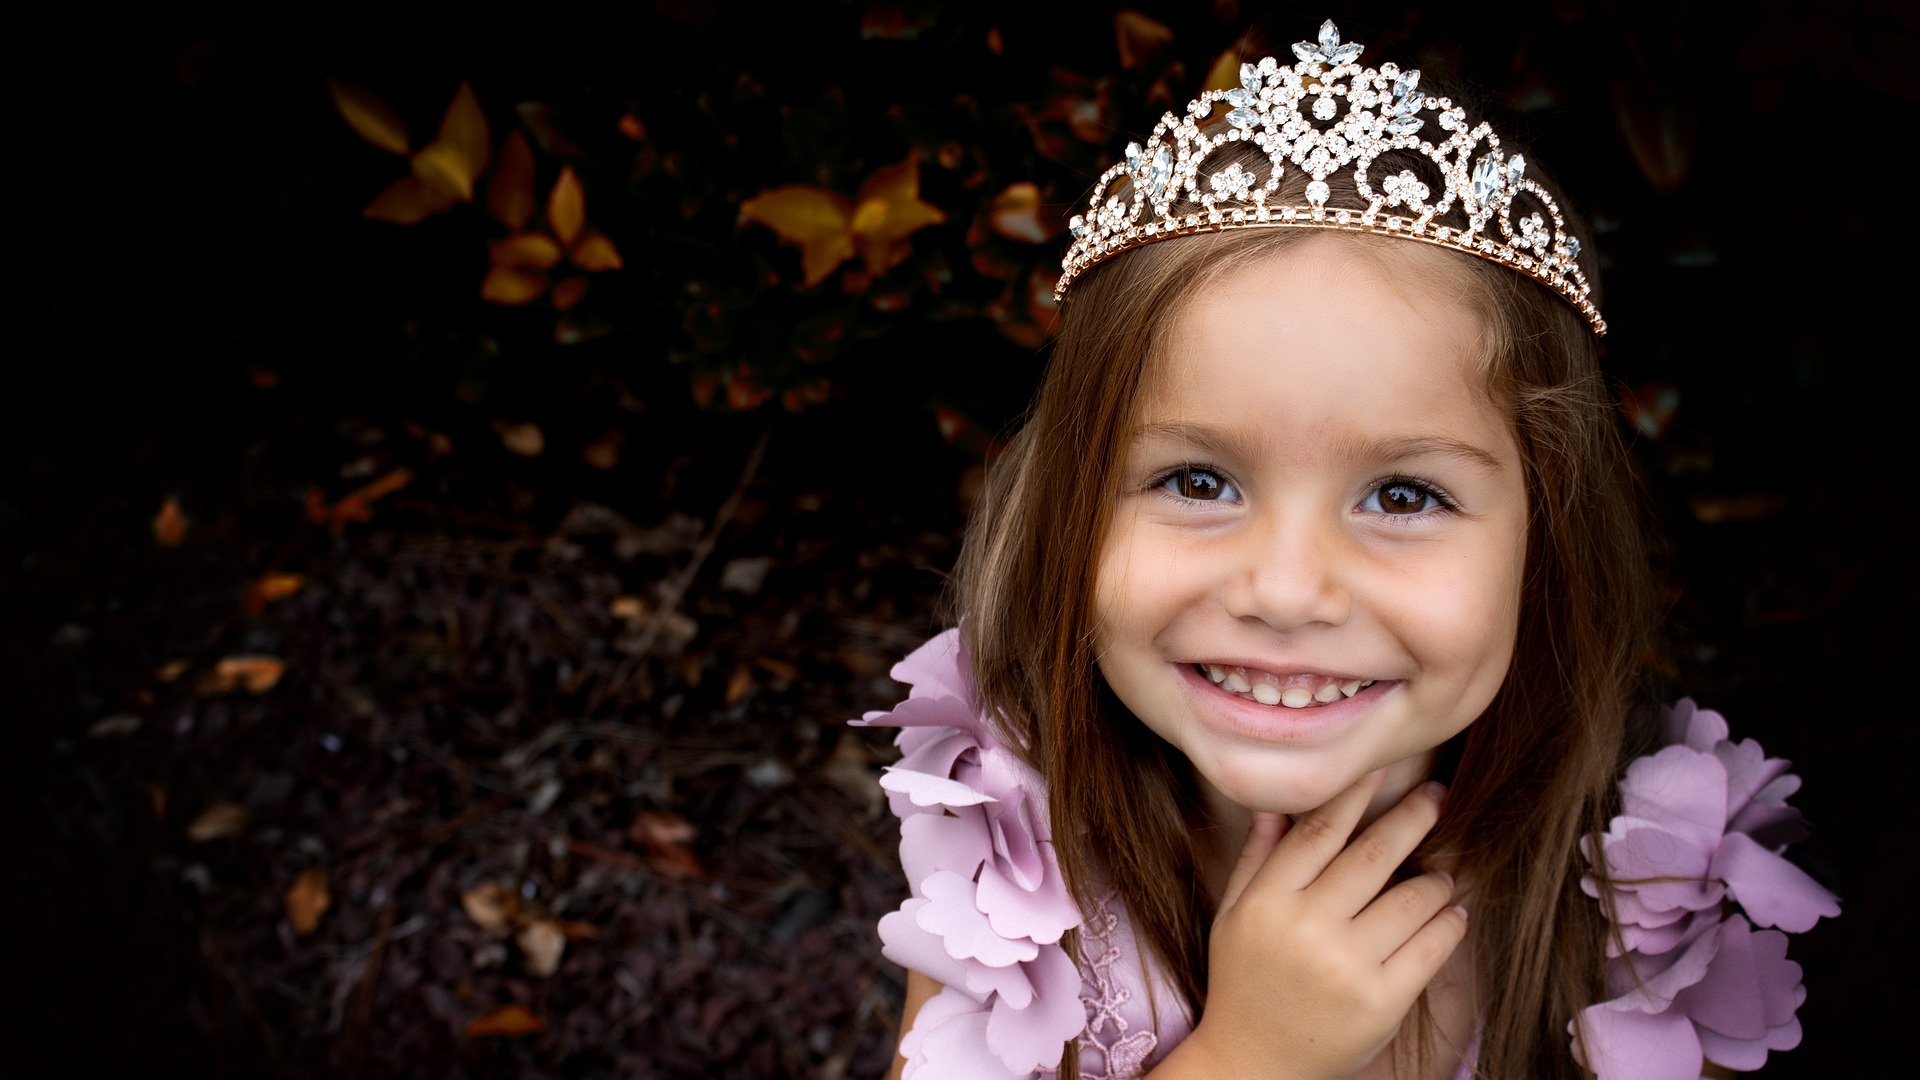 https://pixabay.com/photos/girl-child-princess-costume-tiara-5892287/